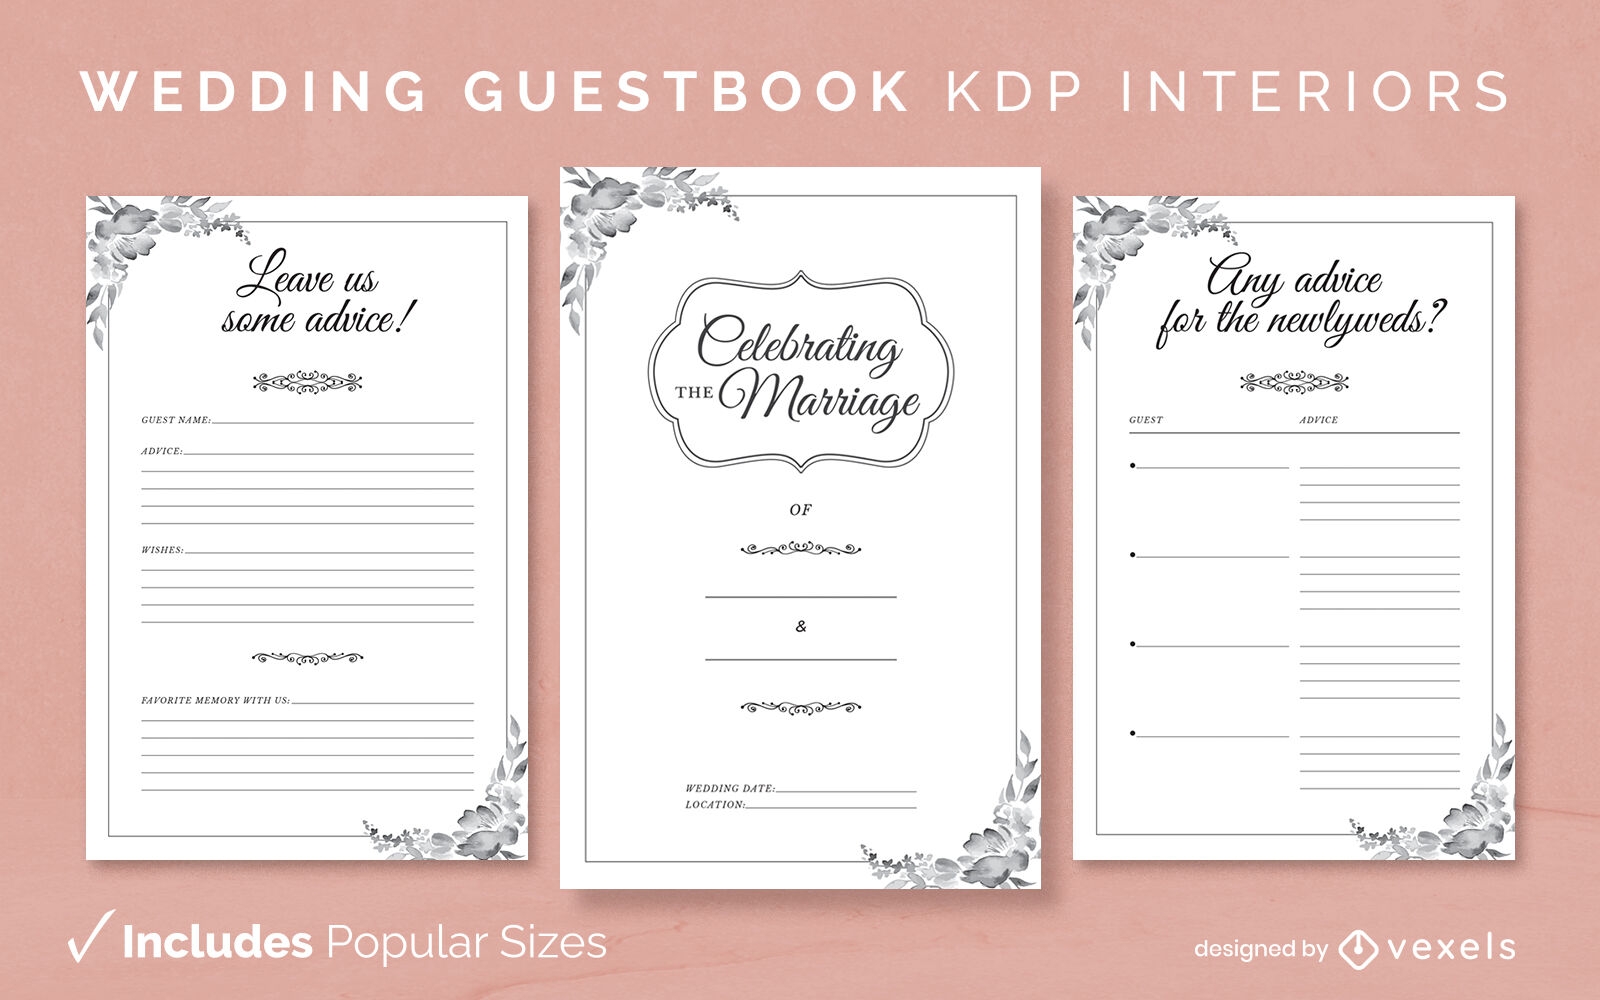 Libro de visitas de boda elegante diseño de interiores kdp